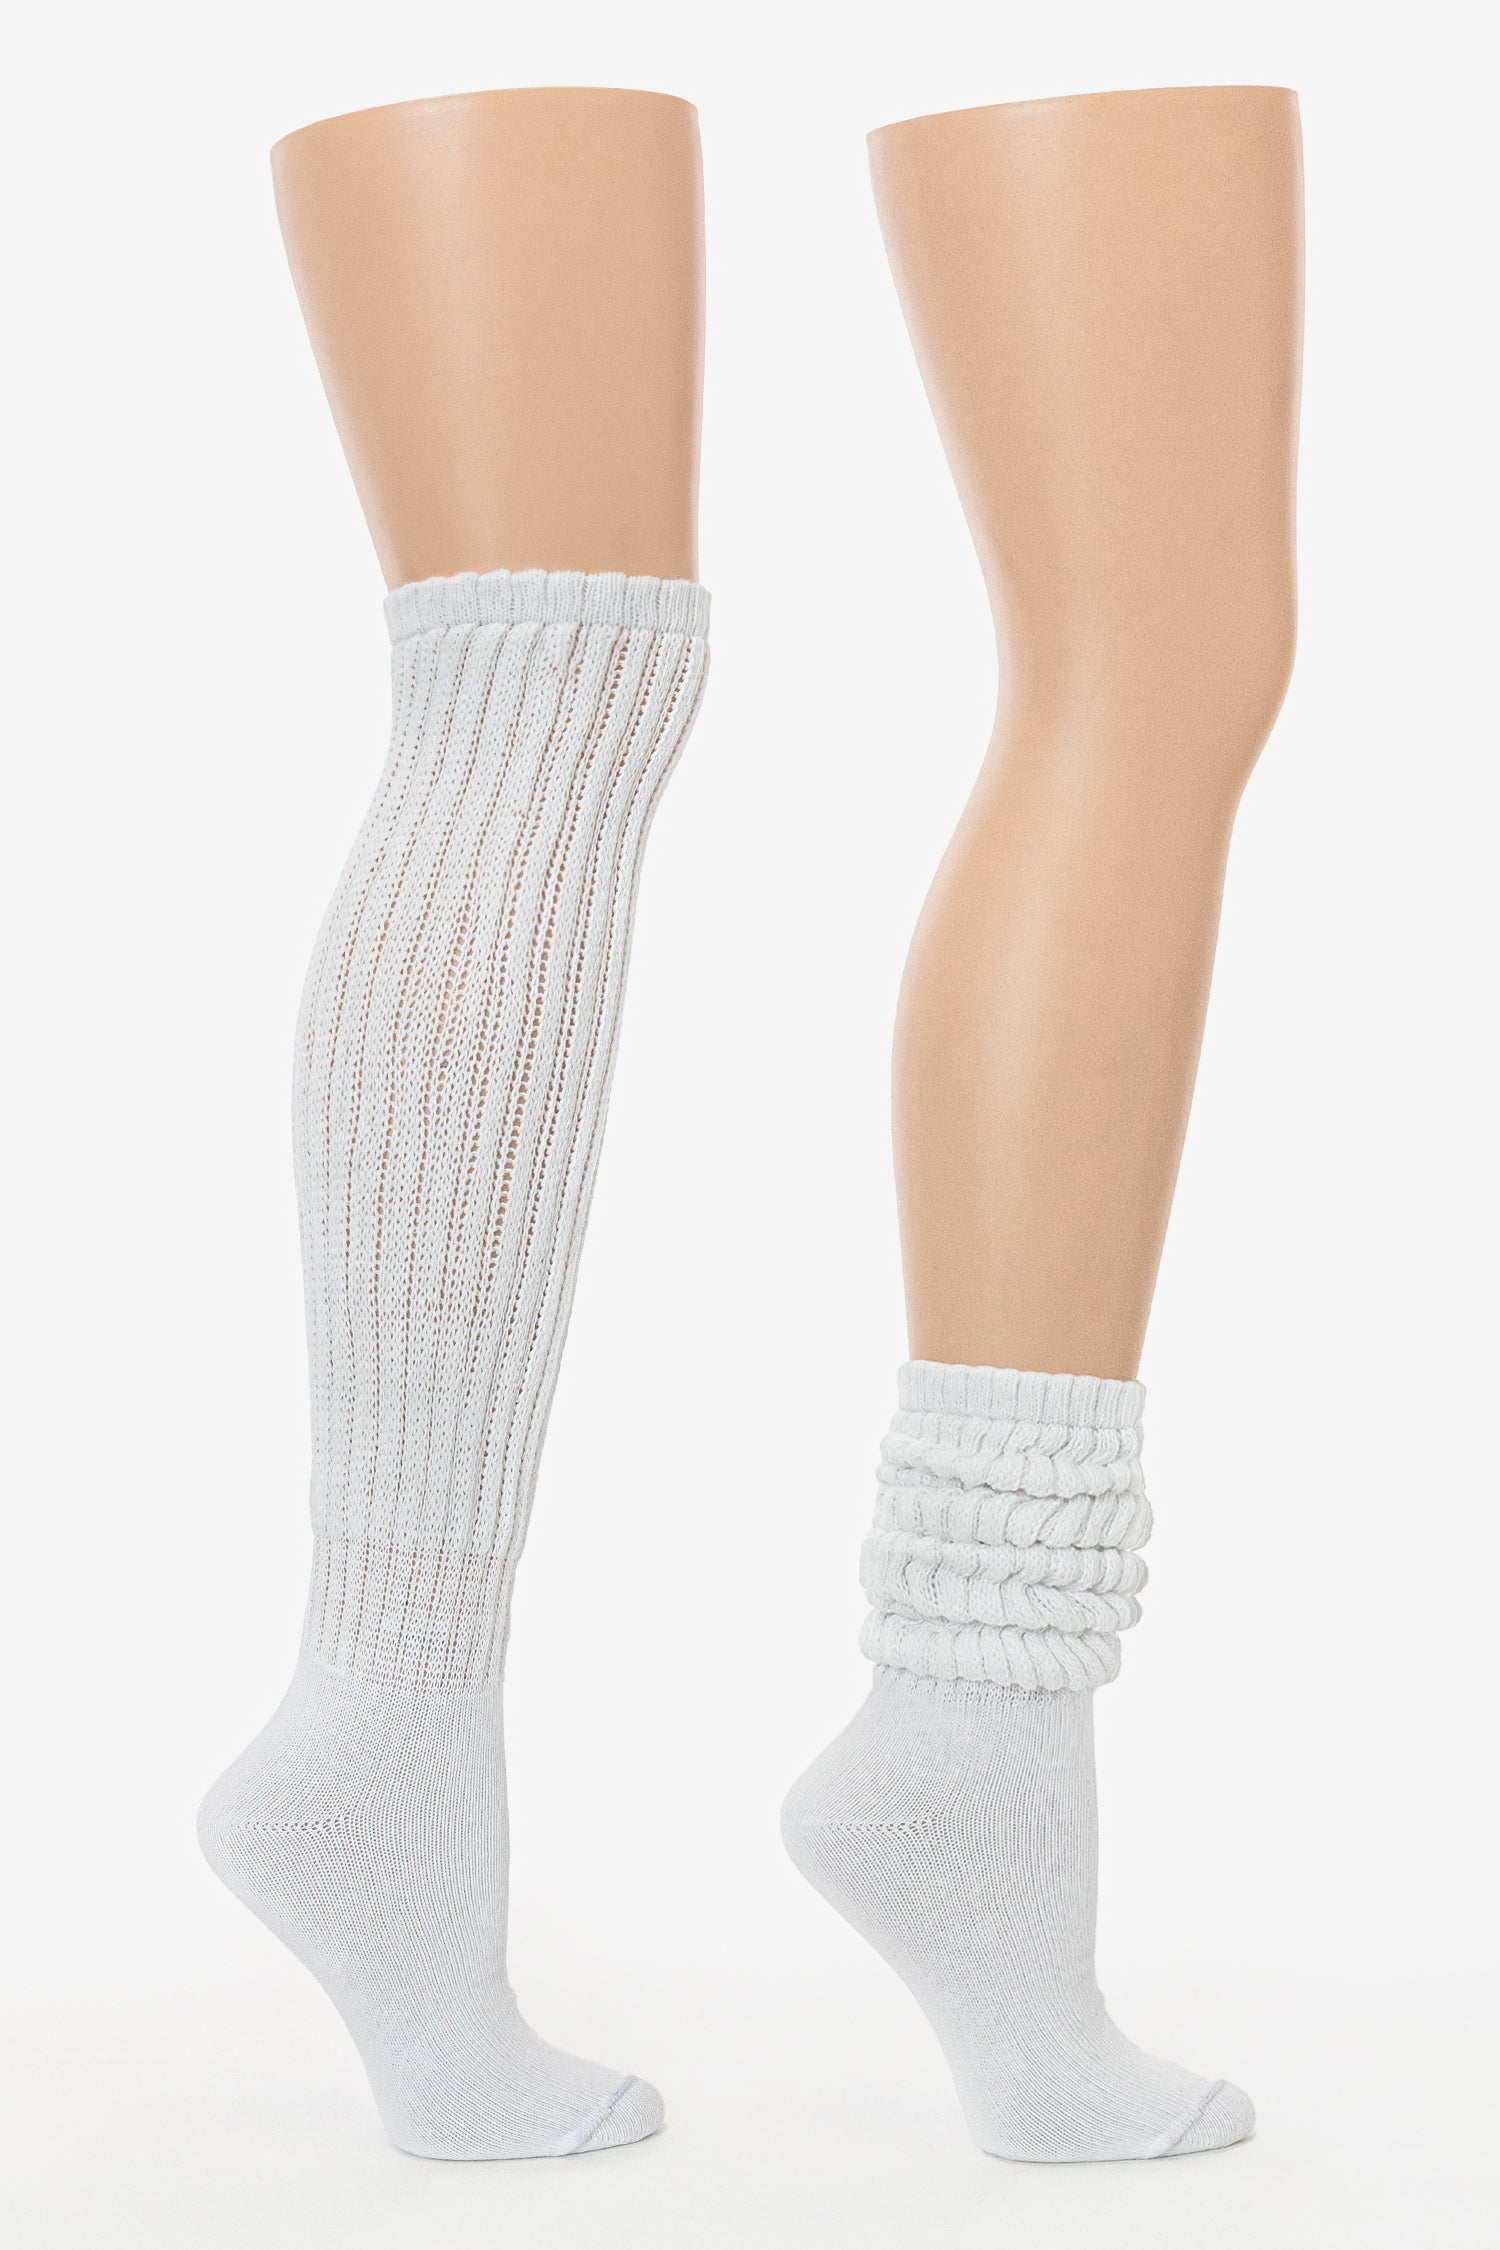 Capezio Dance Socks  Dancewear Solutions®